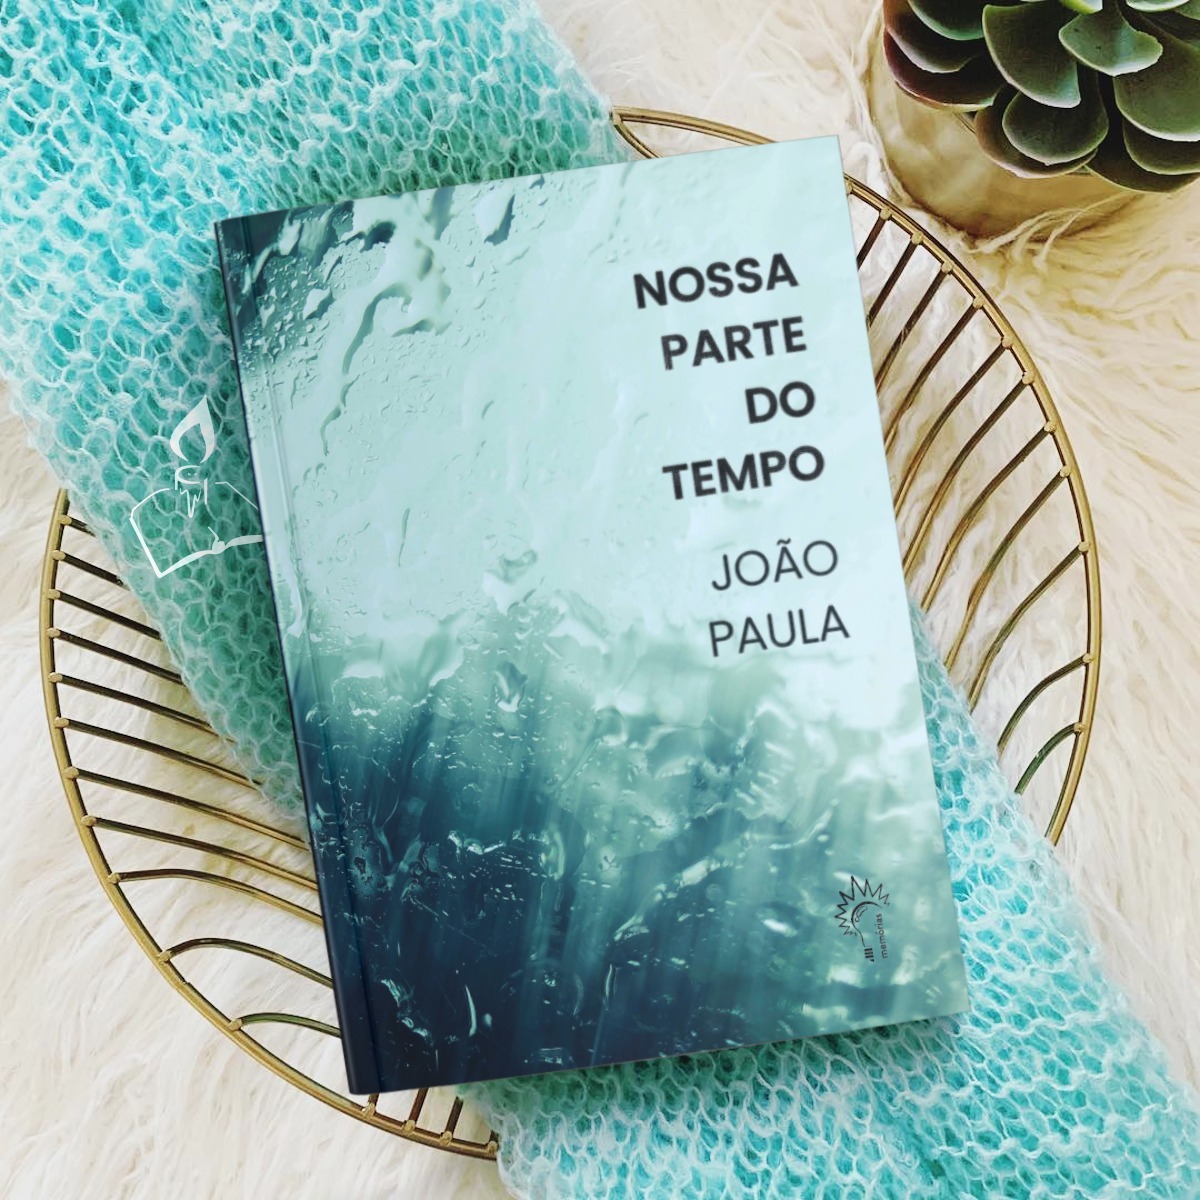 João Paula - Novela 'Nossa parte do tempo' com extrema beleza tece o luto sobre uma paternidade perdida